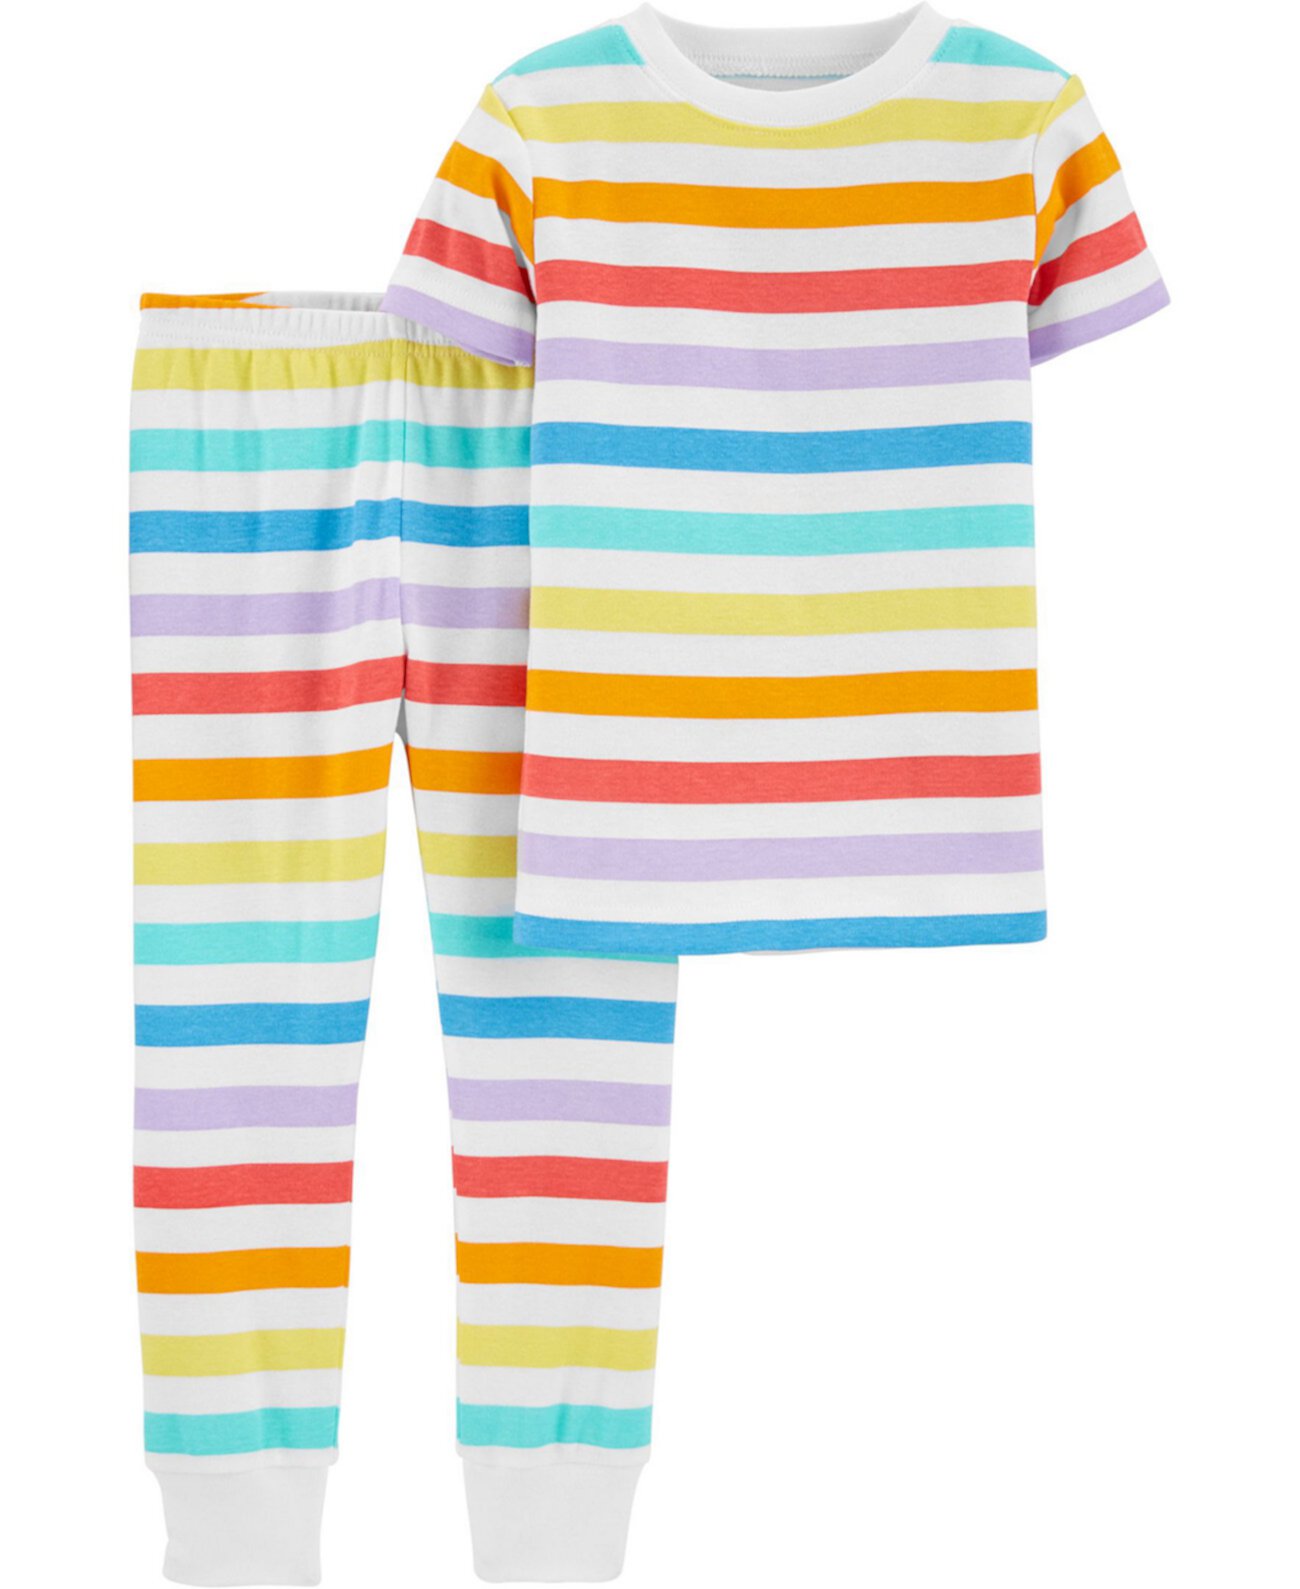 Пижама Rainbow Snug Fit для маленьких мальчиков и девочек, комплект из 2 предметов Carter's